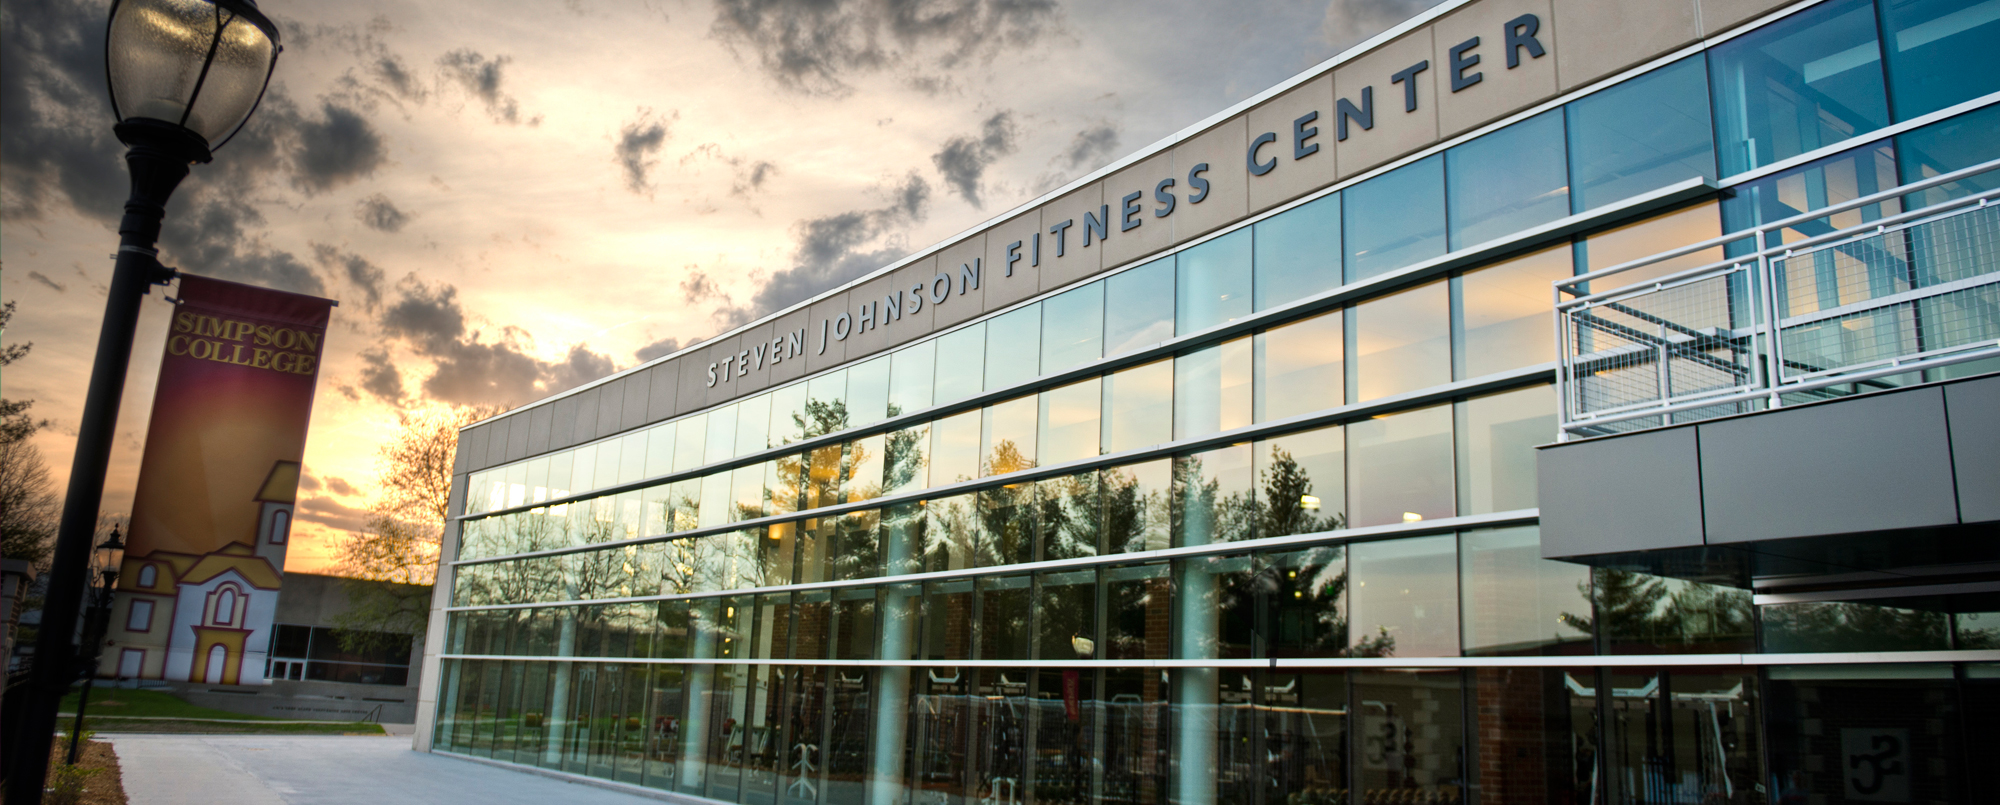 Steven Johnson Fitness Center